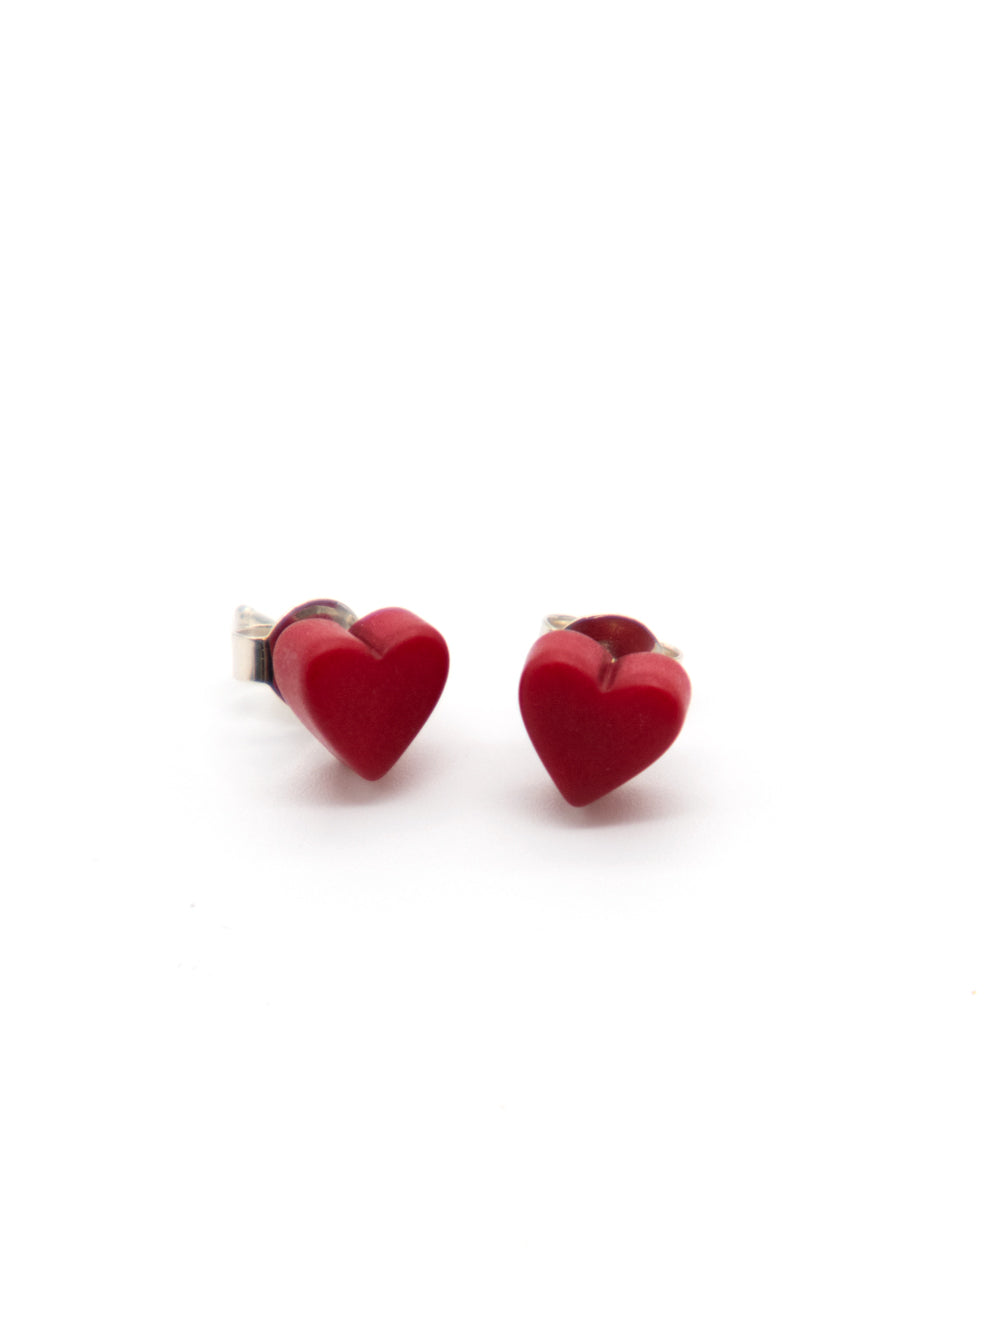 Heart stud earrings Corazones red - LaTagua nut earrings silver